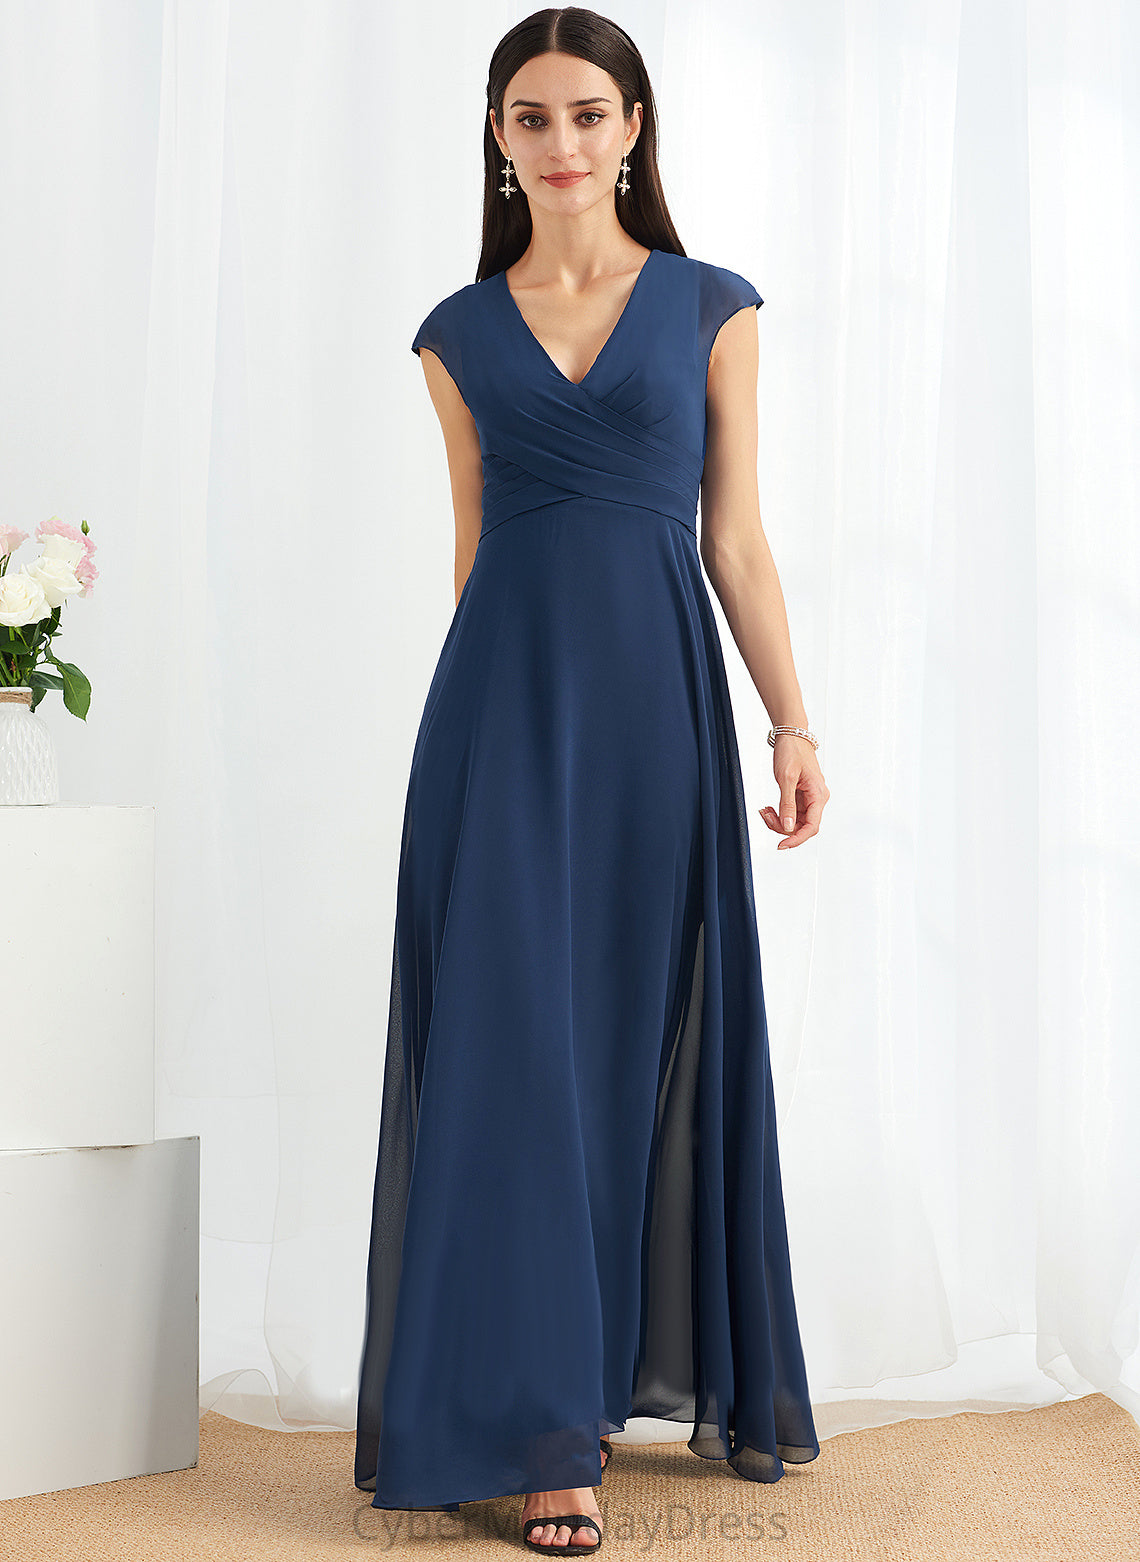 Embellishment Floor-Length Silhouette Neckline Length Ruffle A-Line Fabric V-neck Shirley Sleeveless Spandex Bridesmaid Dresses